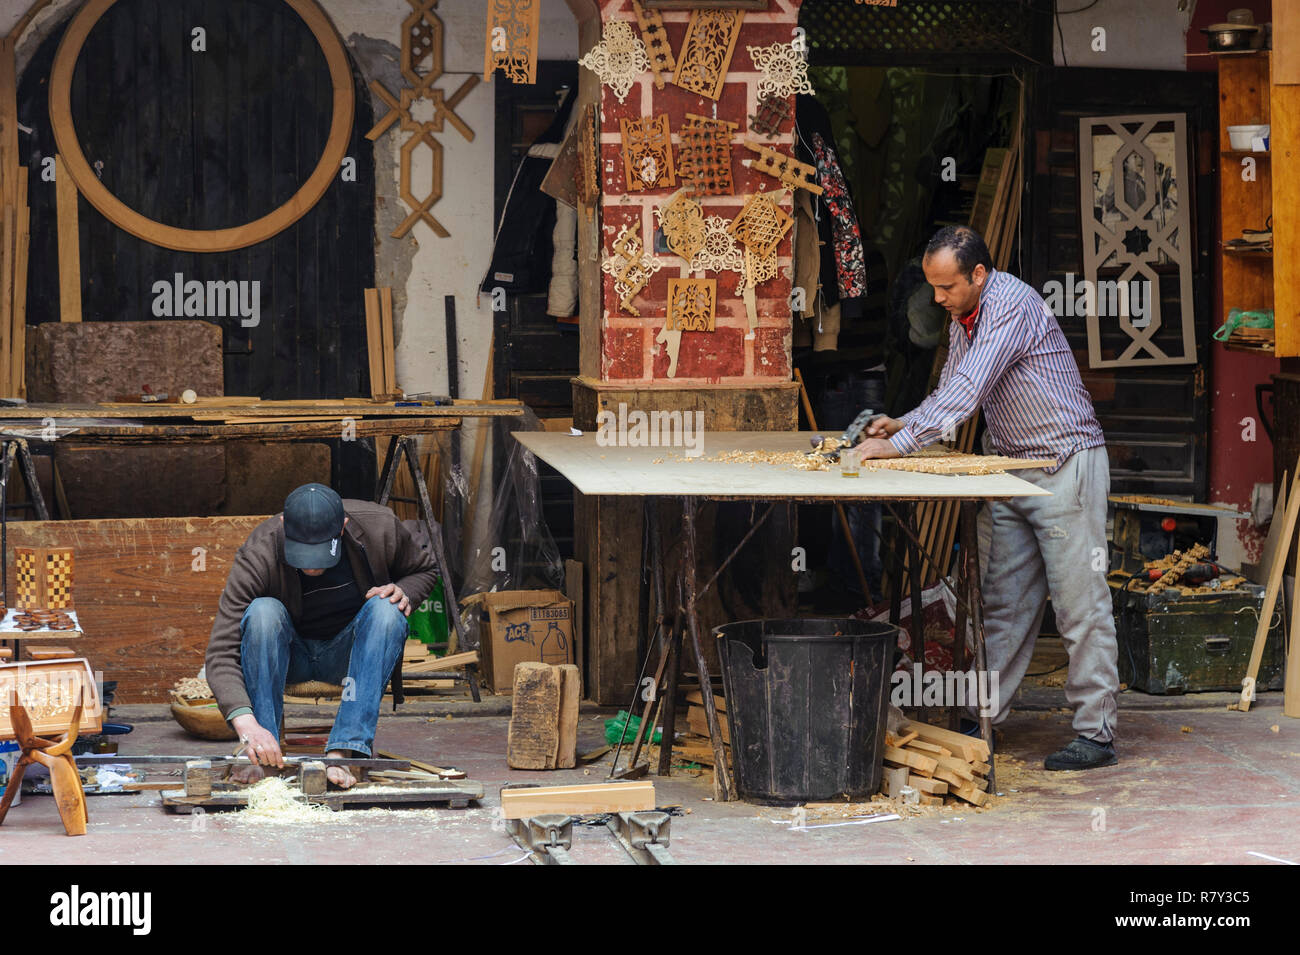 05-03-15, Marrakech, Marocco. Scena di strada nel souk della medina. Falegnami, artigiani al lavoro. Foto: © Simon GrossetPhoto: © Simon Grosset Foto Stock